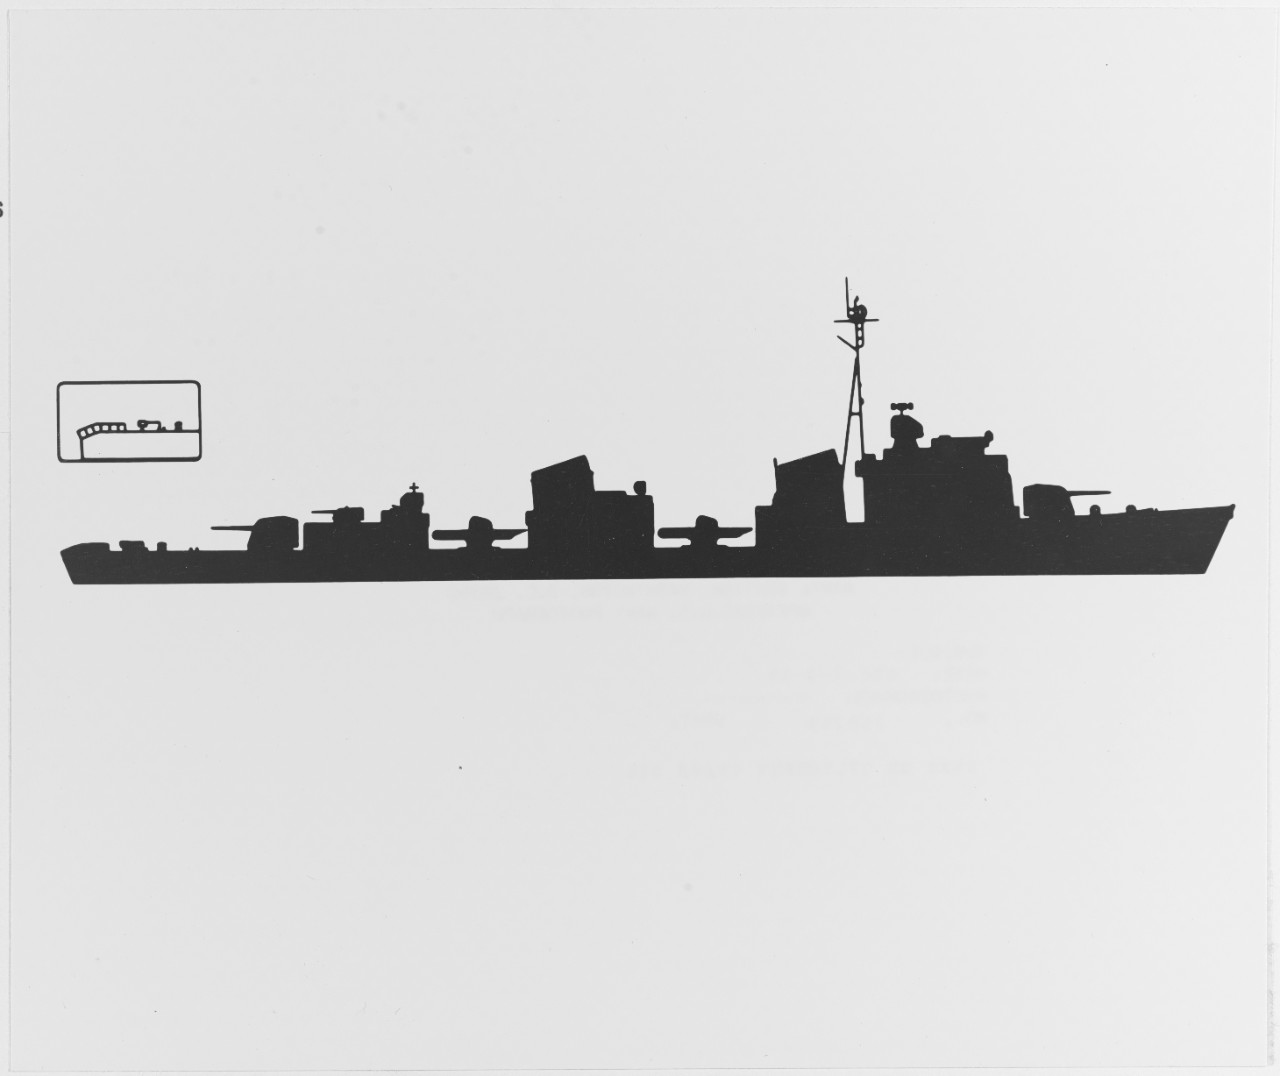 Soviet OTLICHNYI Class Destroyer (DD)